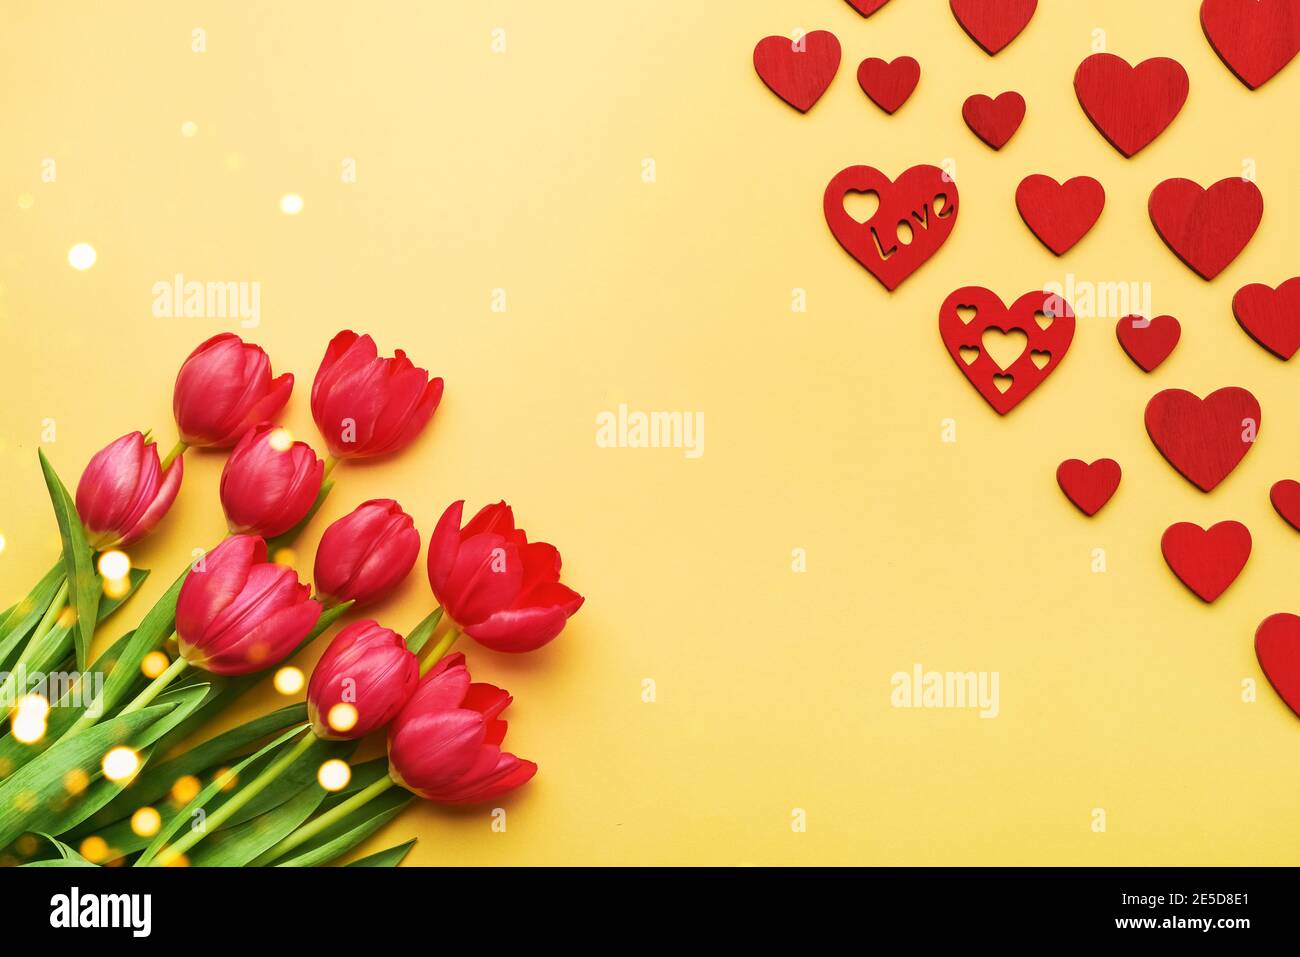 Tarjeta de felicitación para San Valentín. Ramo de tulipanes rojos y corazones rojos sobre fondo amarillo Foto de stock